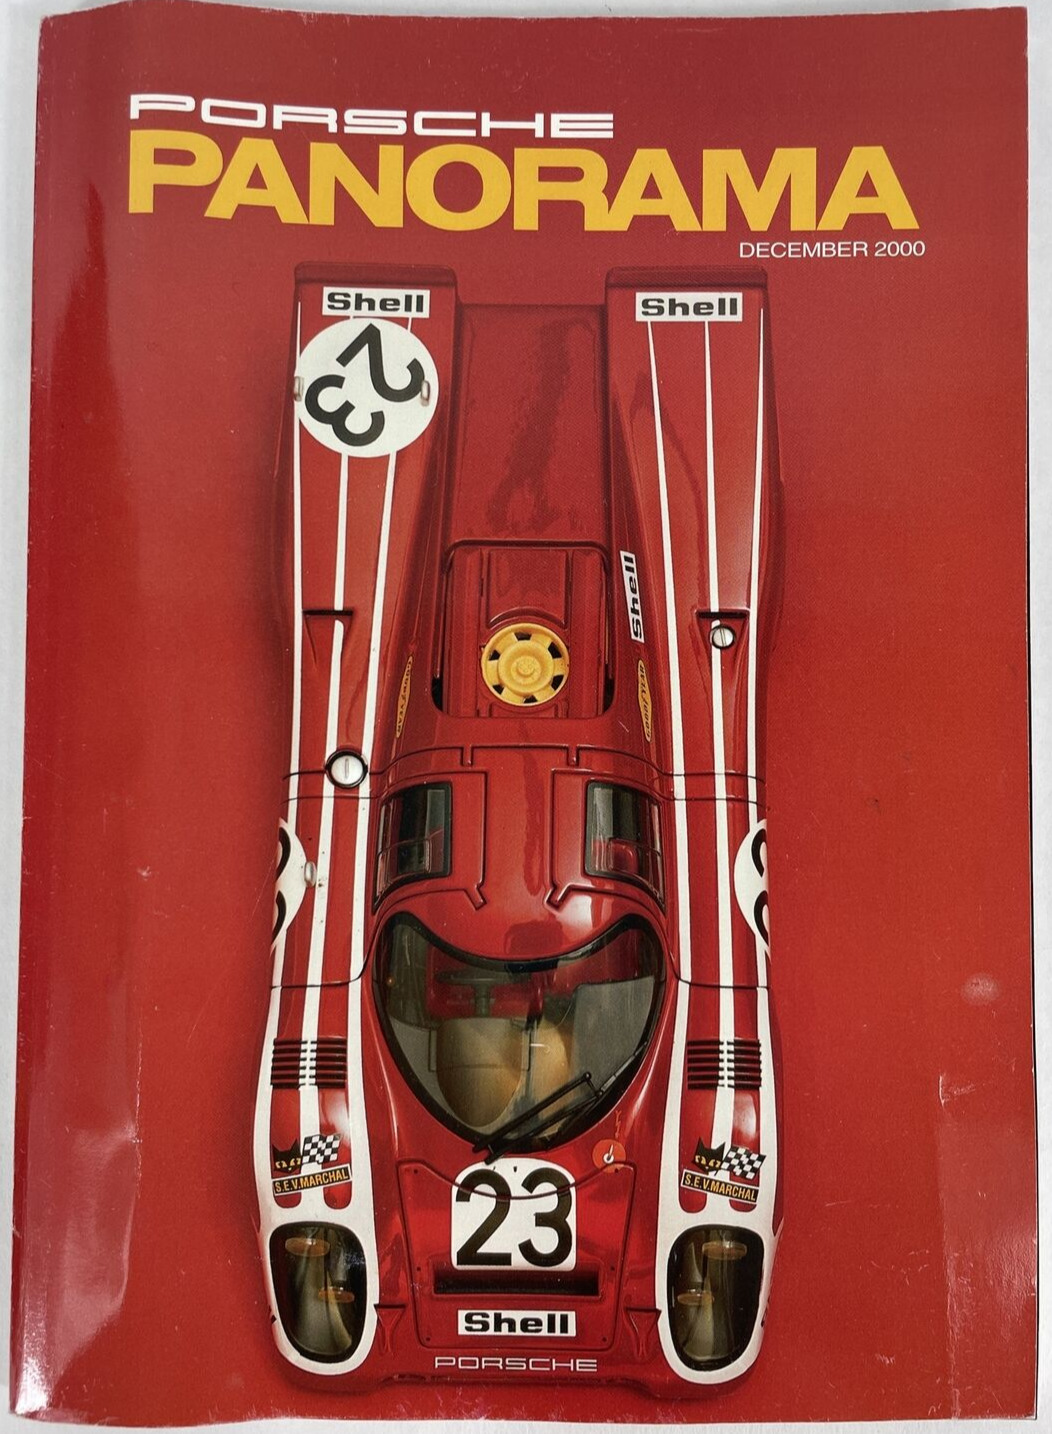 Vintage: Porsche Panorama Magazine December 2000 Volume 45 Number 12